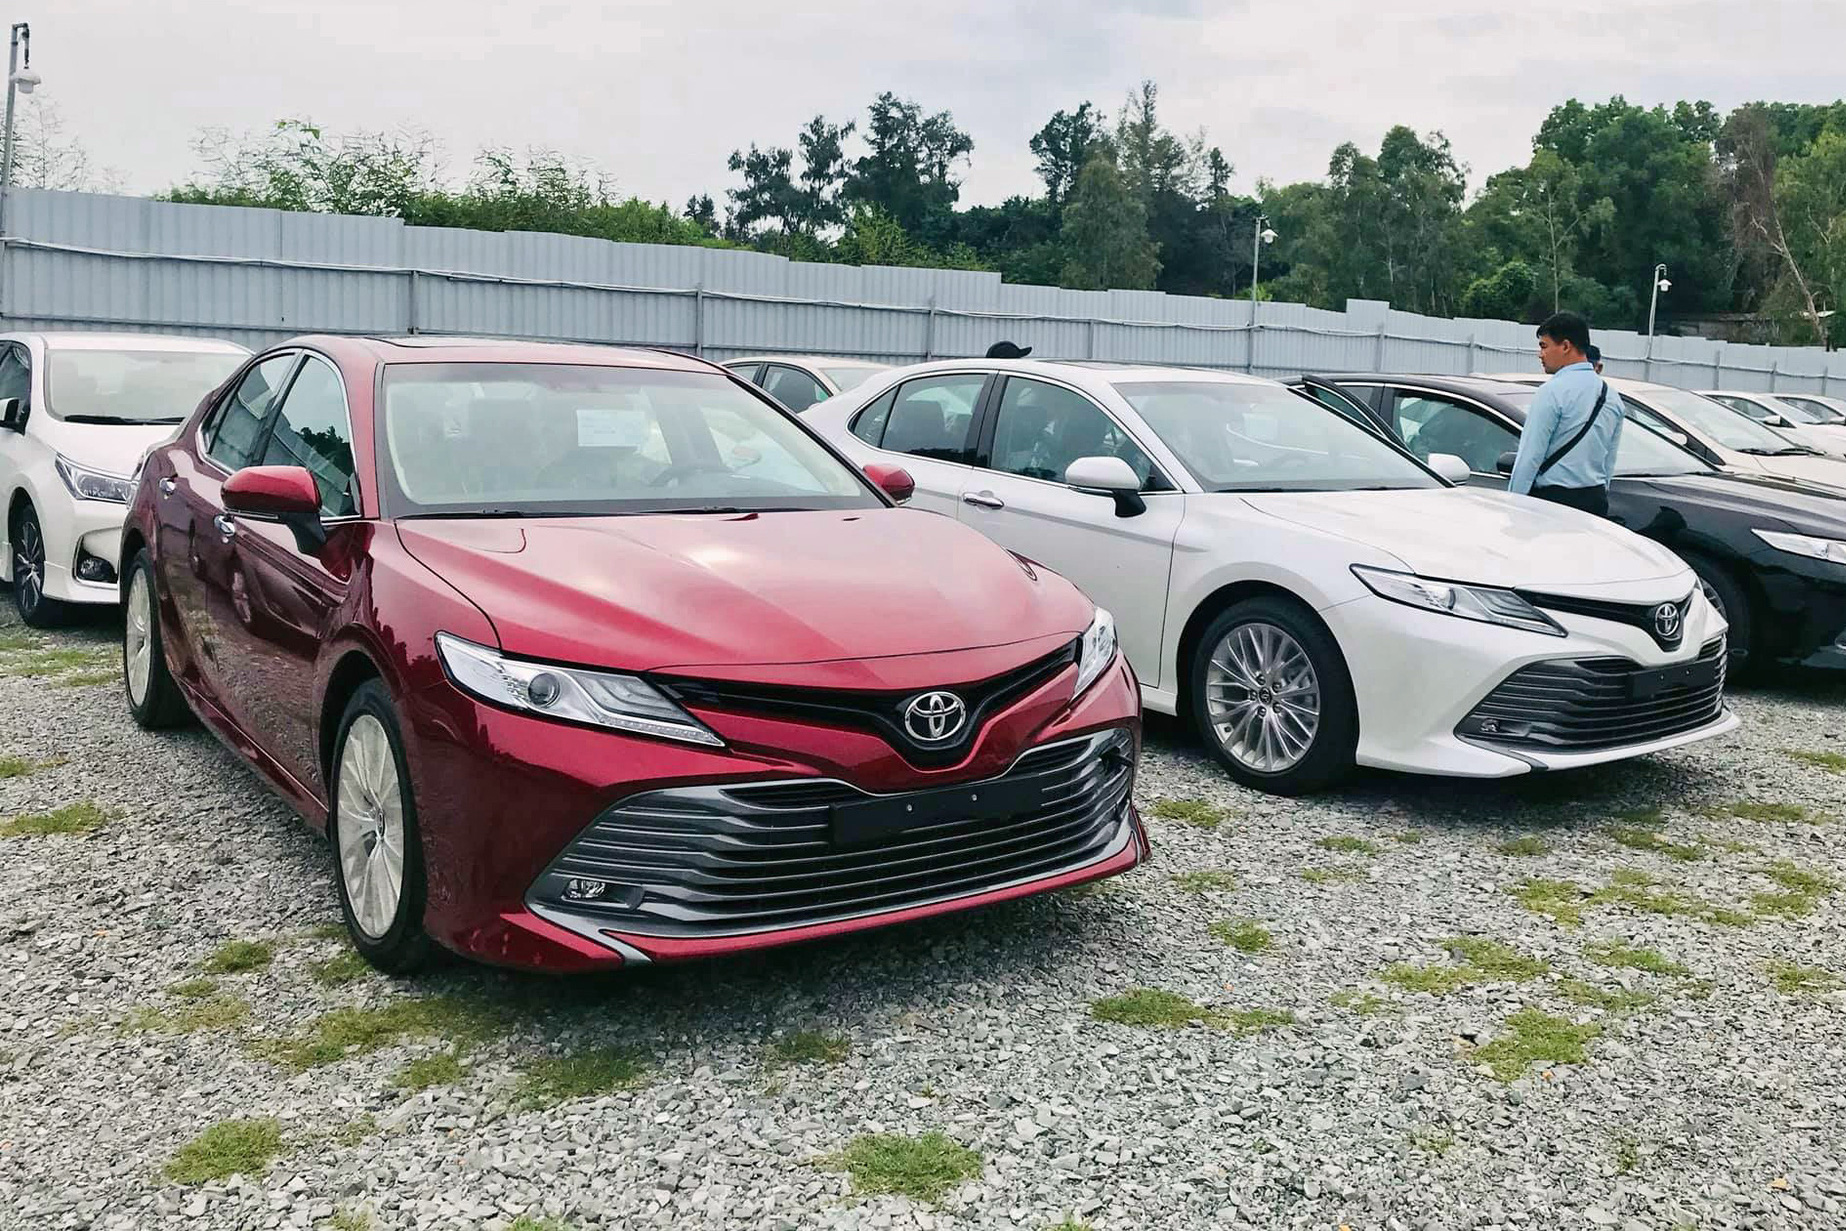 Toyota Camry và Corolla Altis giảm giá mạnh tại đại lý: Giảm nhiều nhất 70 triệu đồng, đón mẫu mới sắp ra mắt